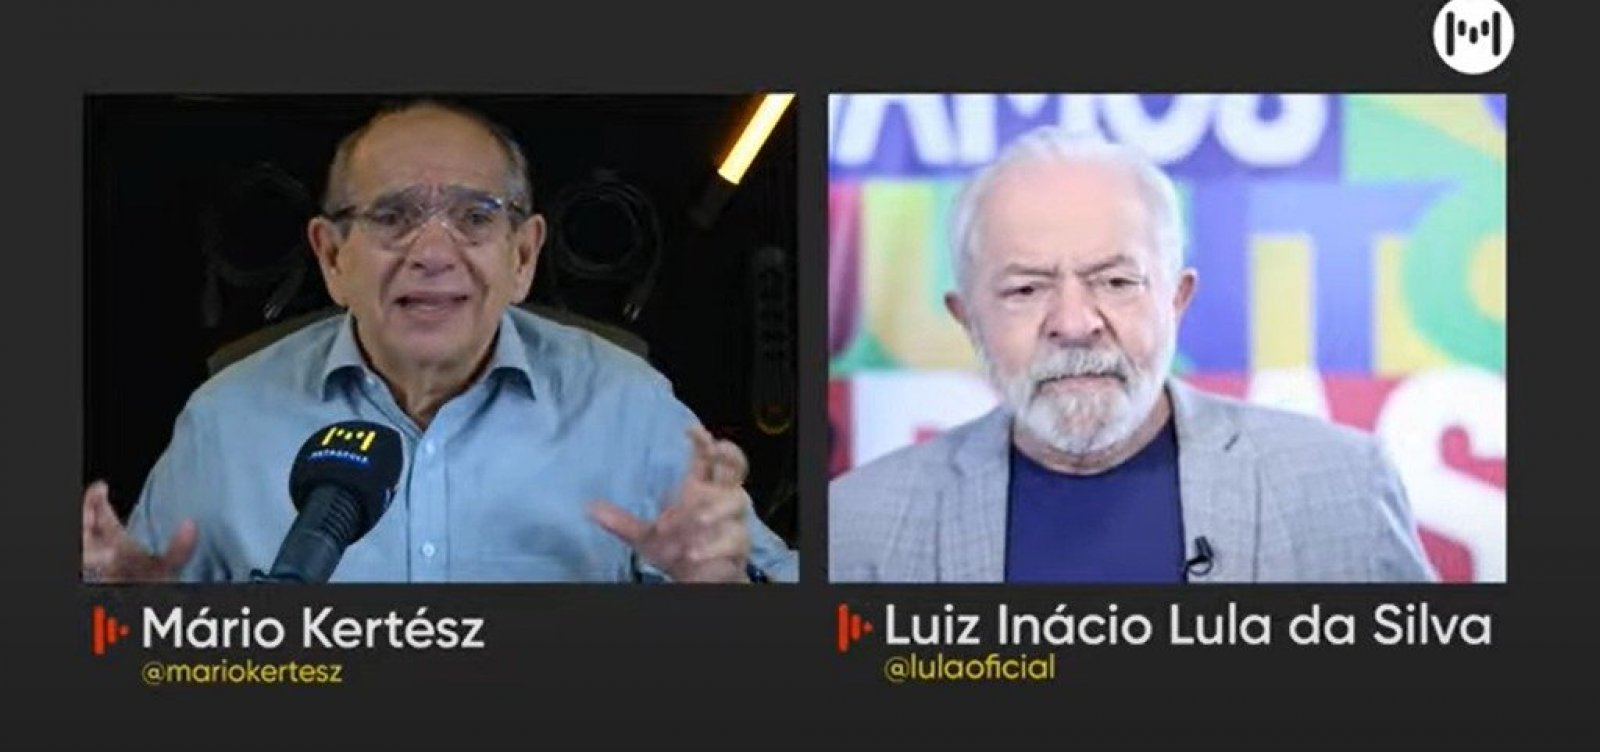 Lula confirma presença no cortejo do 2 de Julho: "Vou encontrar com minha baianidade"